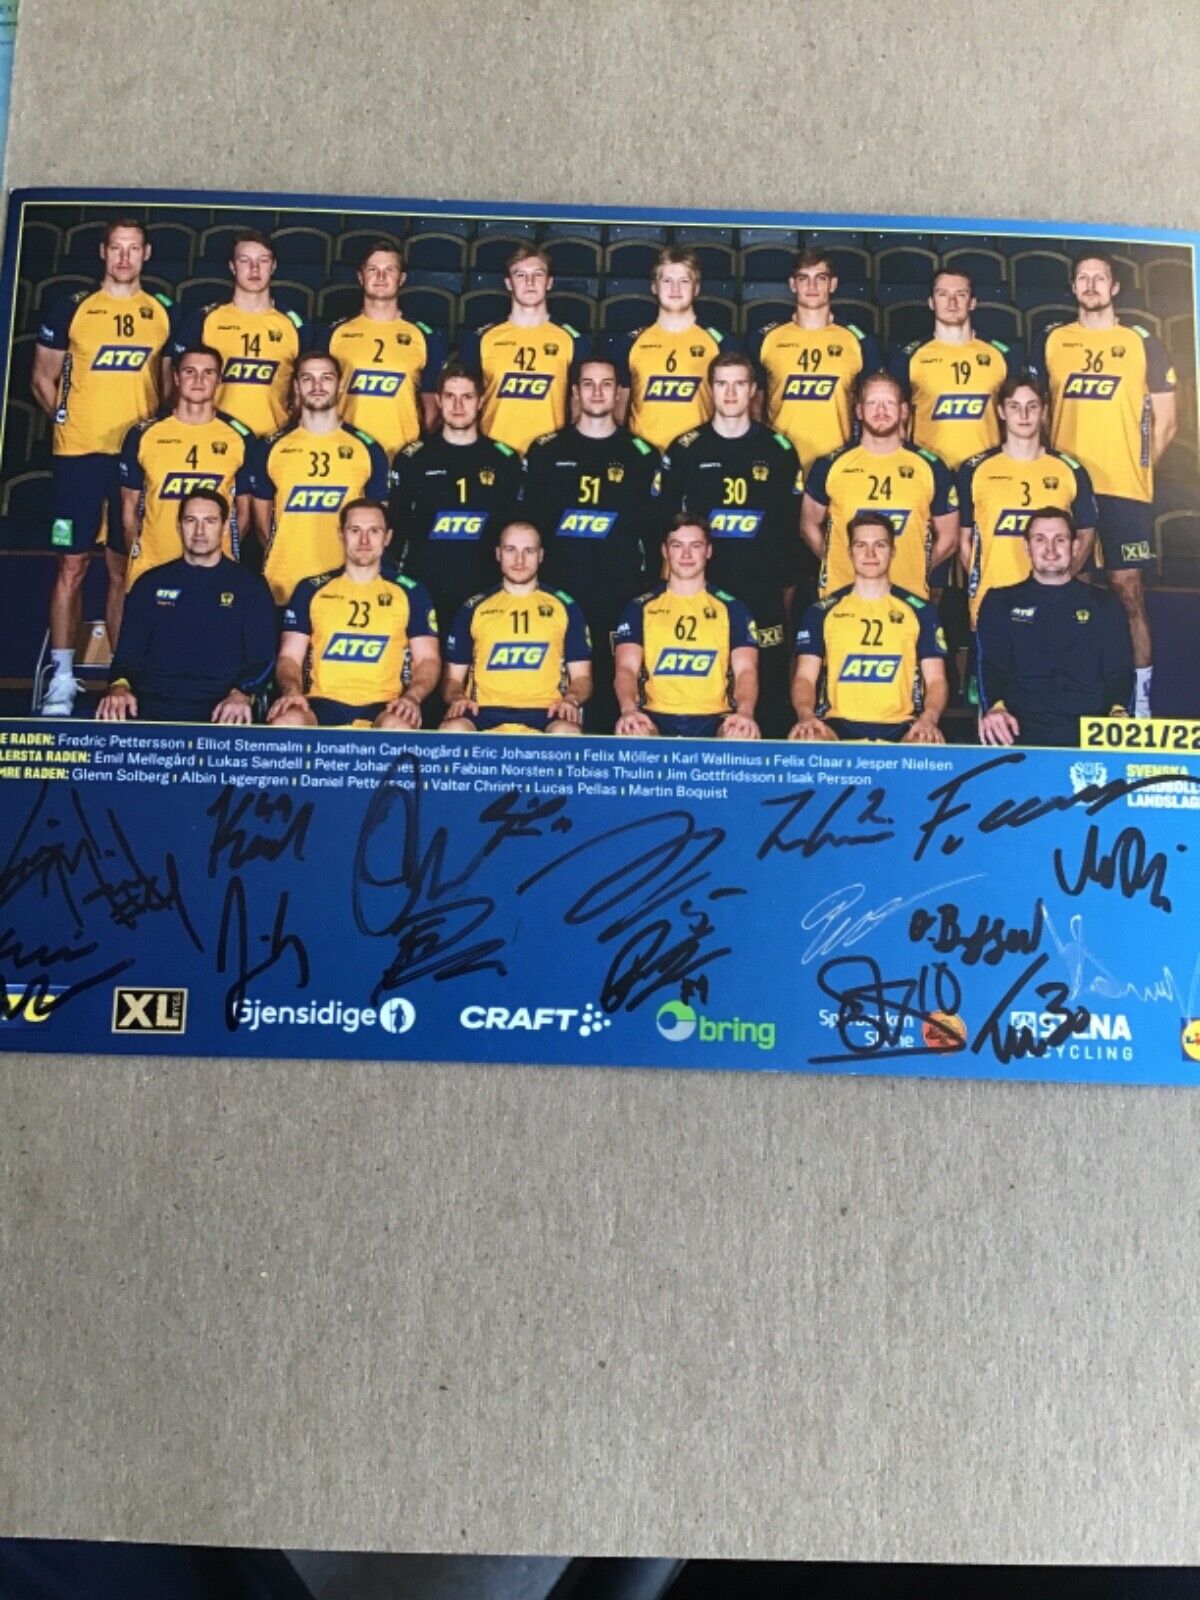 Handball Team Sweden 🇸🇪 Winner EURO 2022, Teamphoto 2021/22 hand signed